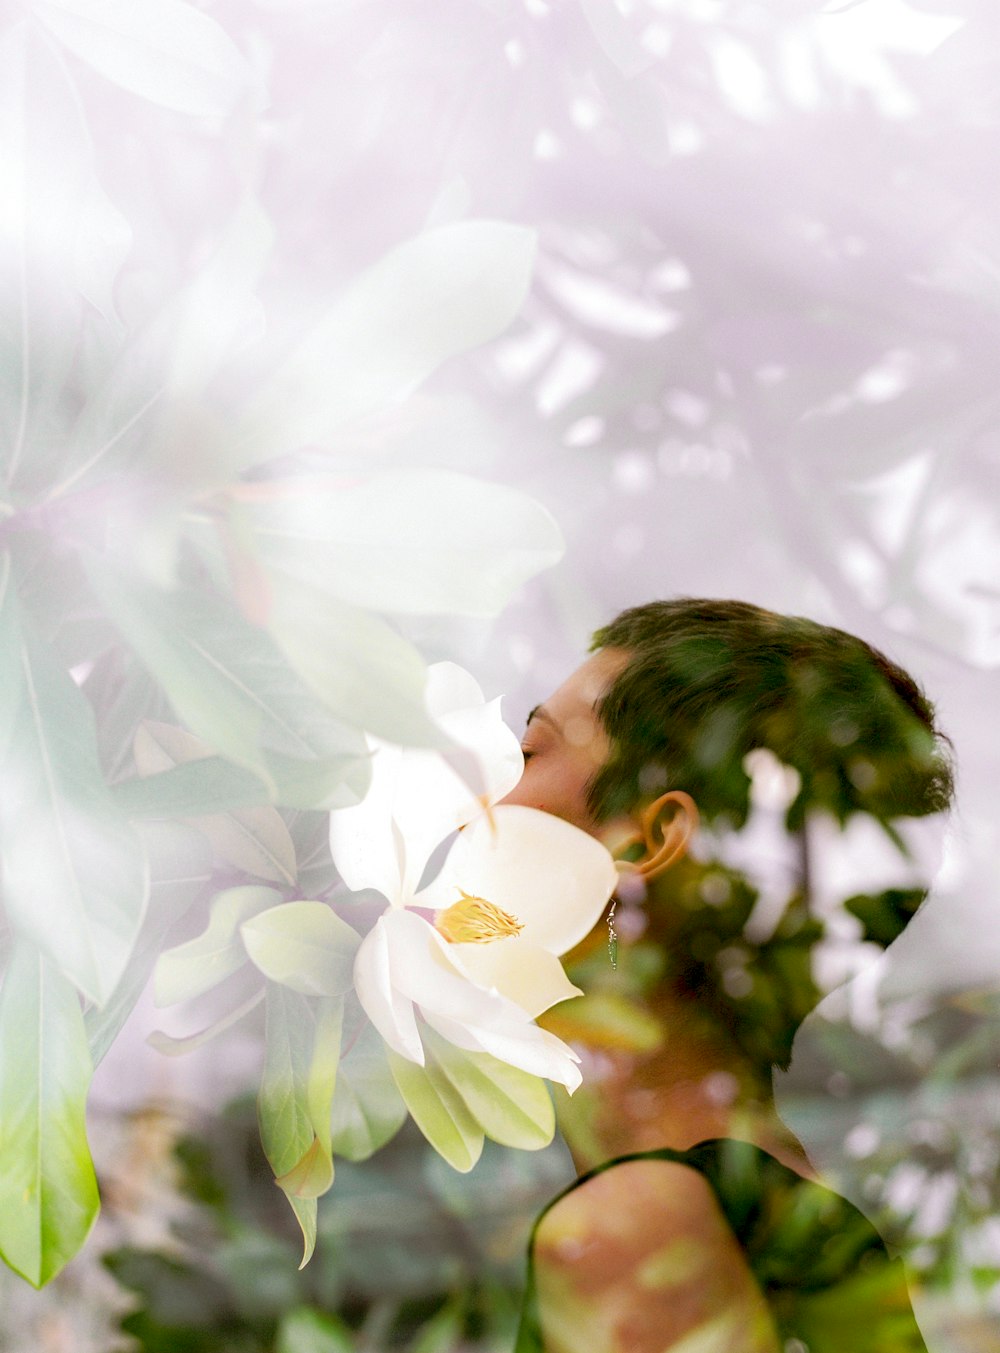 mulher na camisa branca que está perto das flores brancas